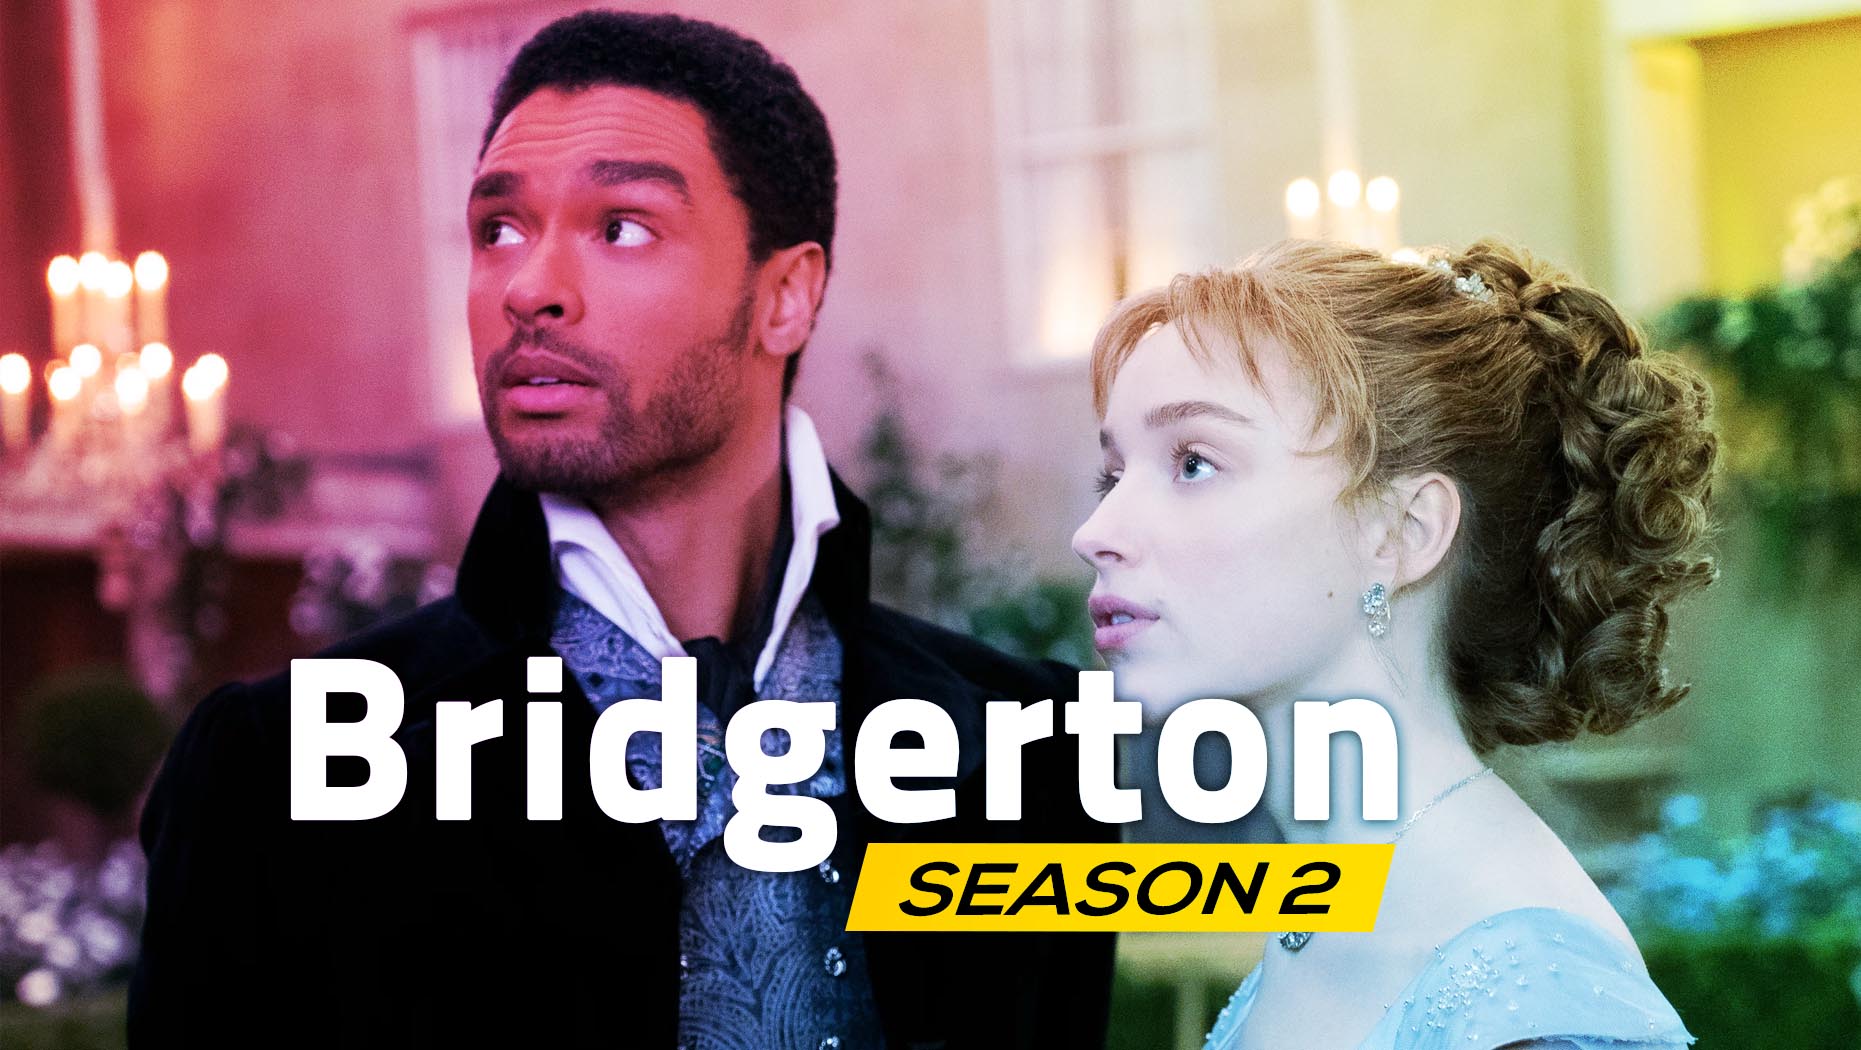 Bridgerton Season 2 Details